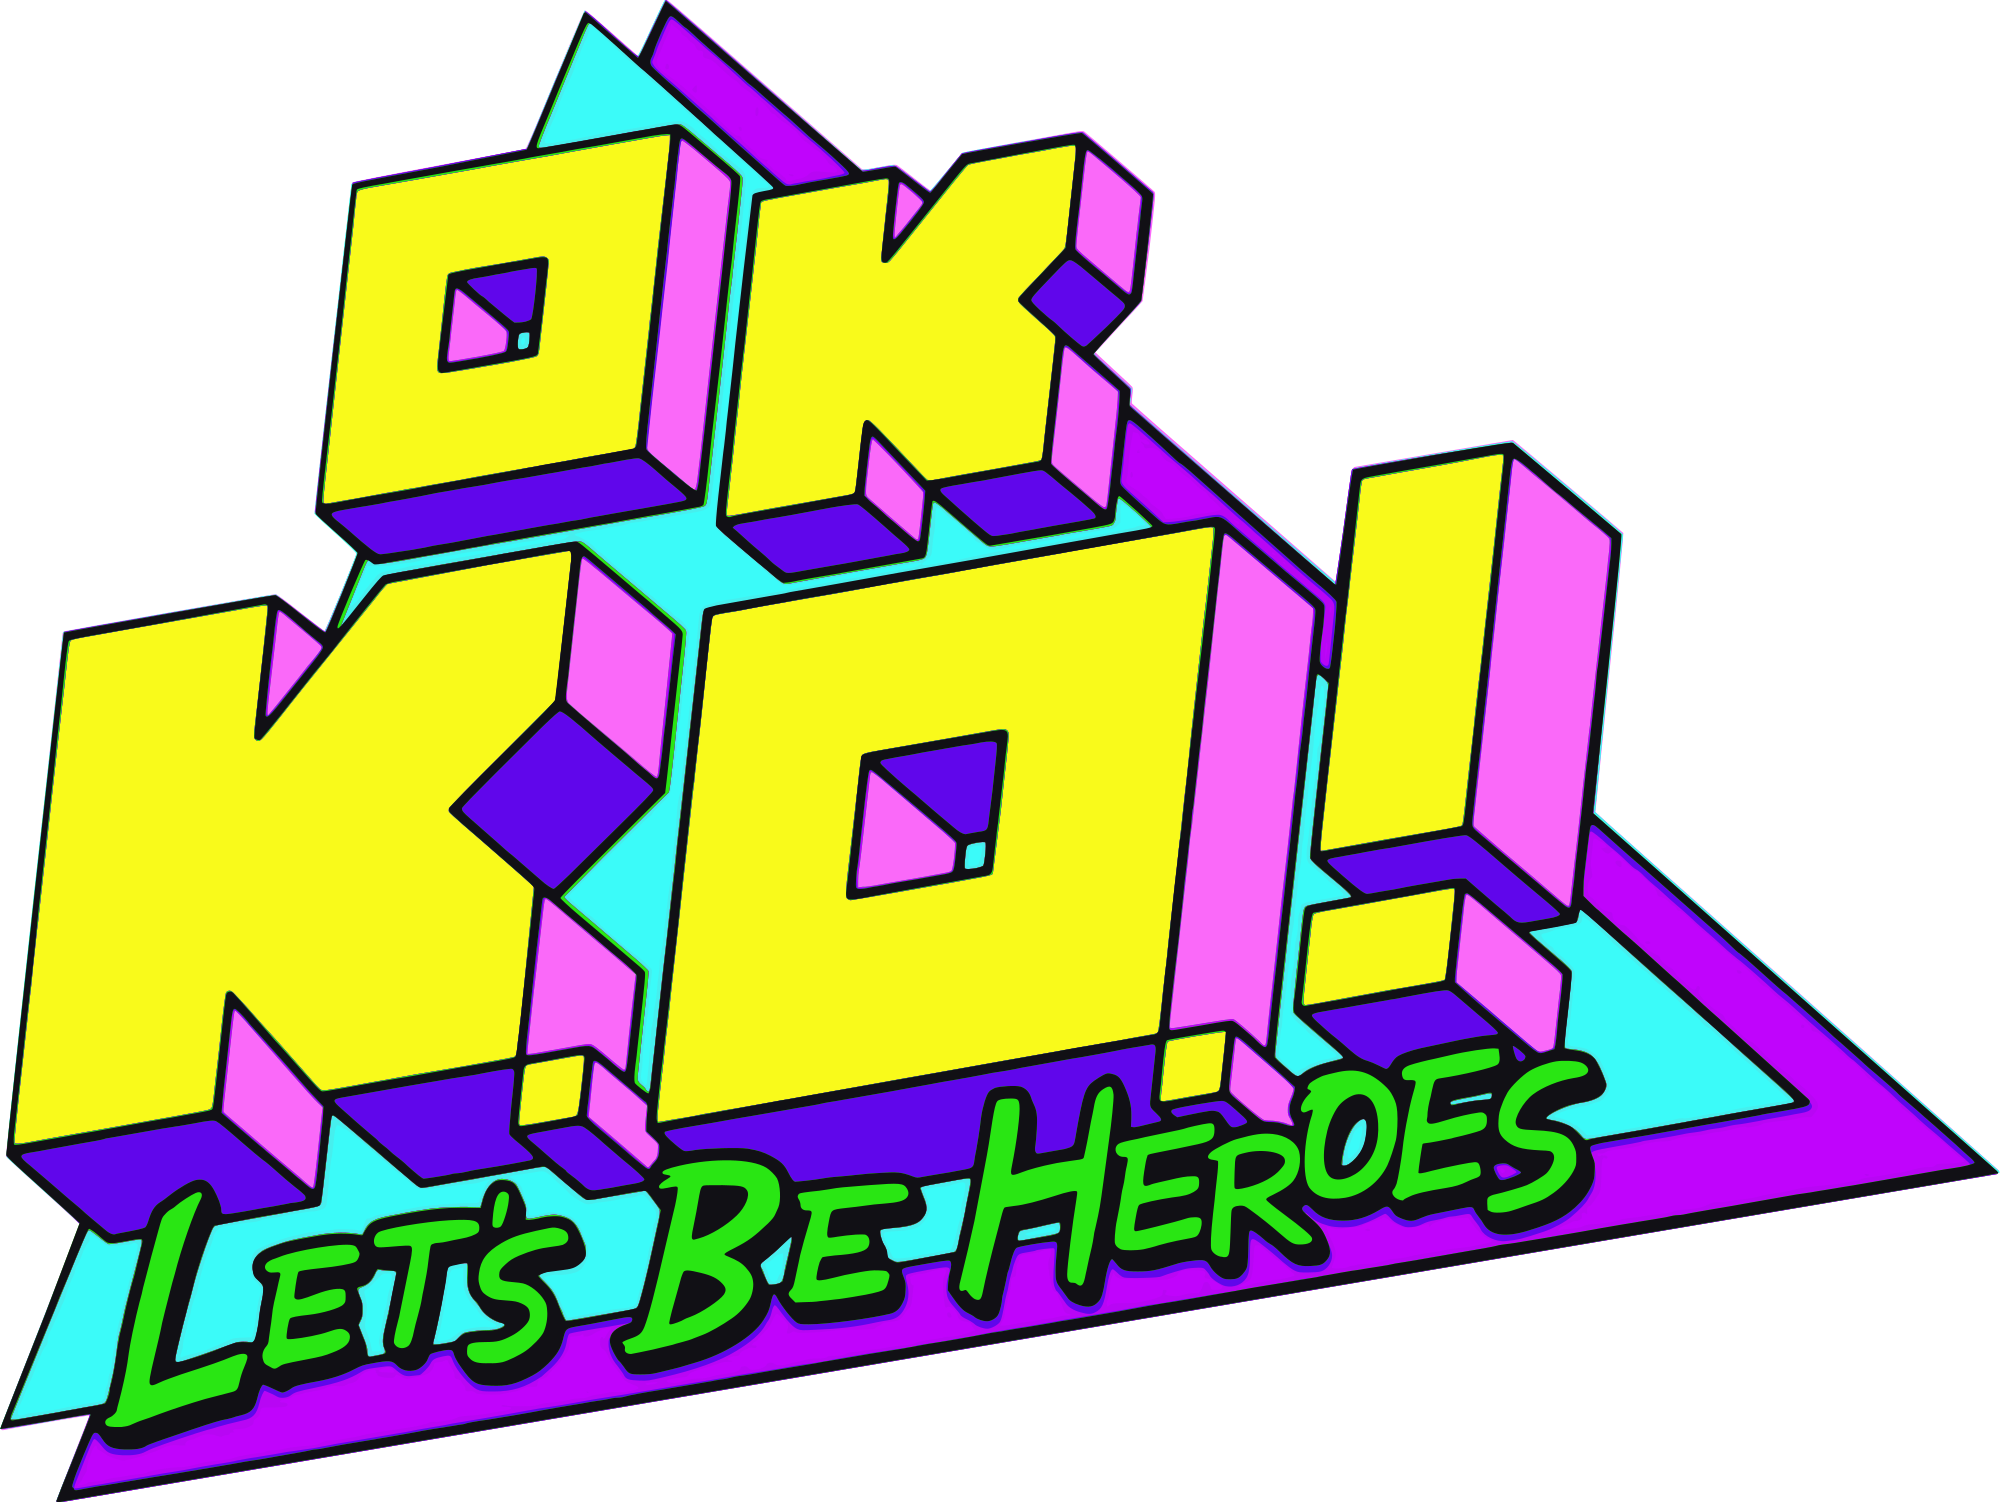 OK K.O.! Let's Play Heroes